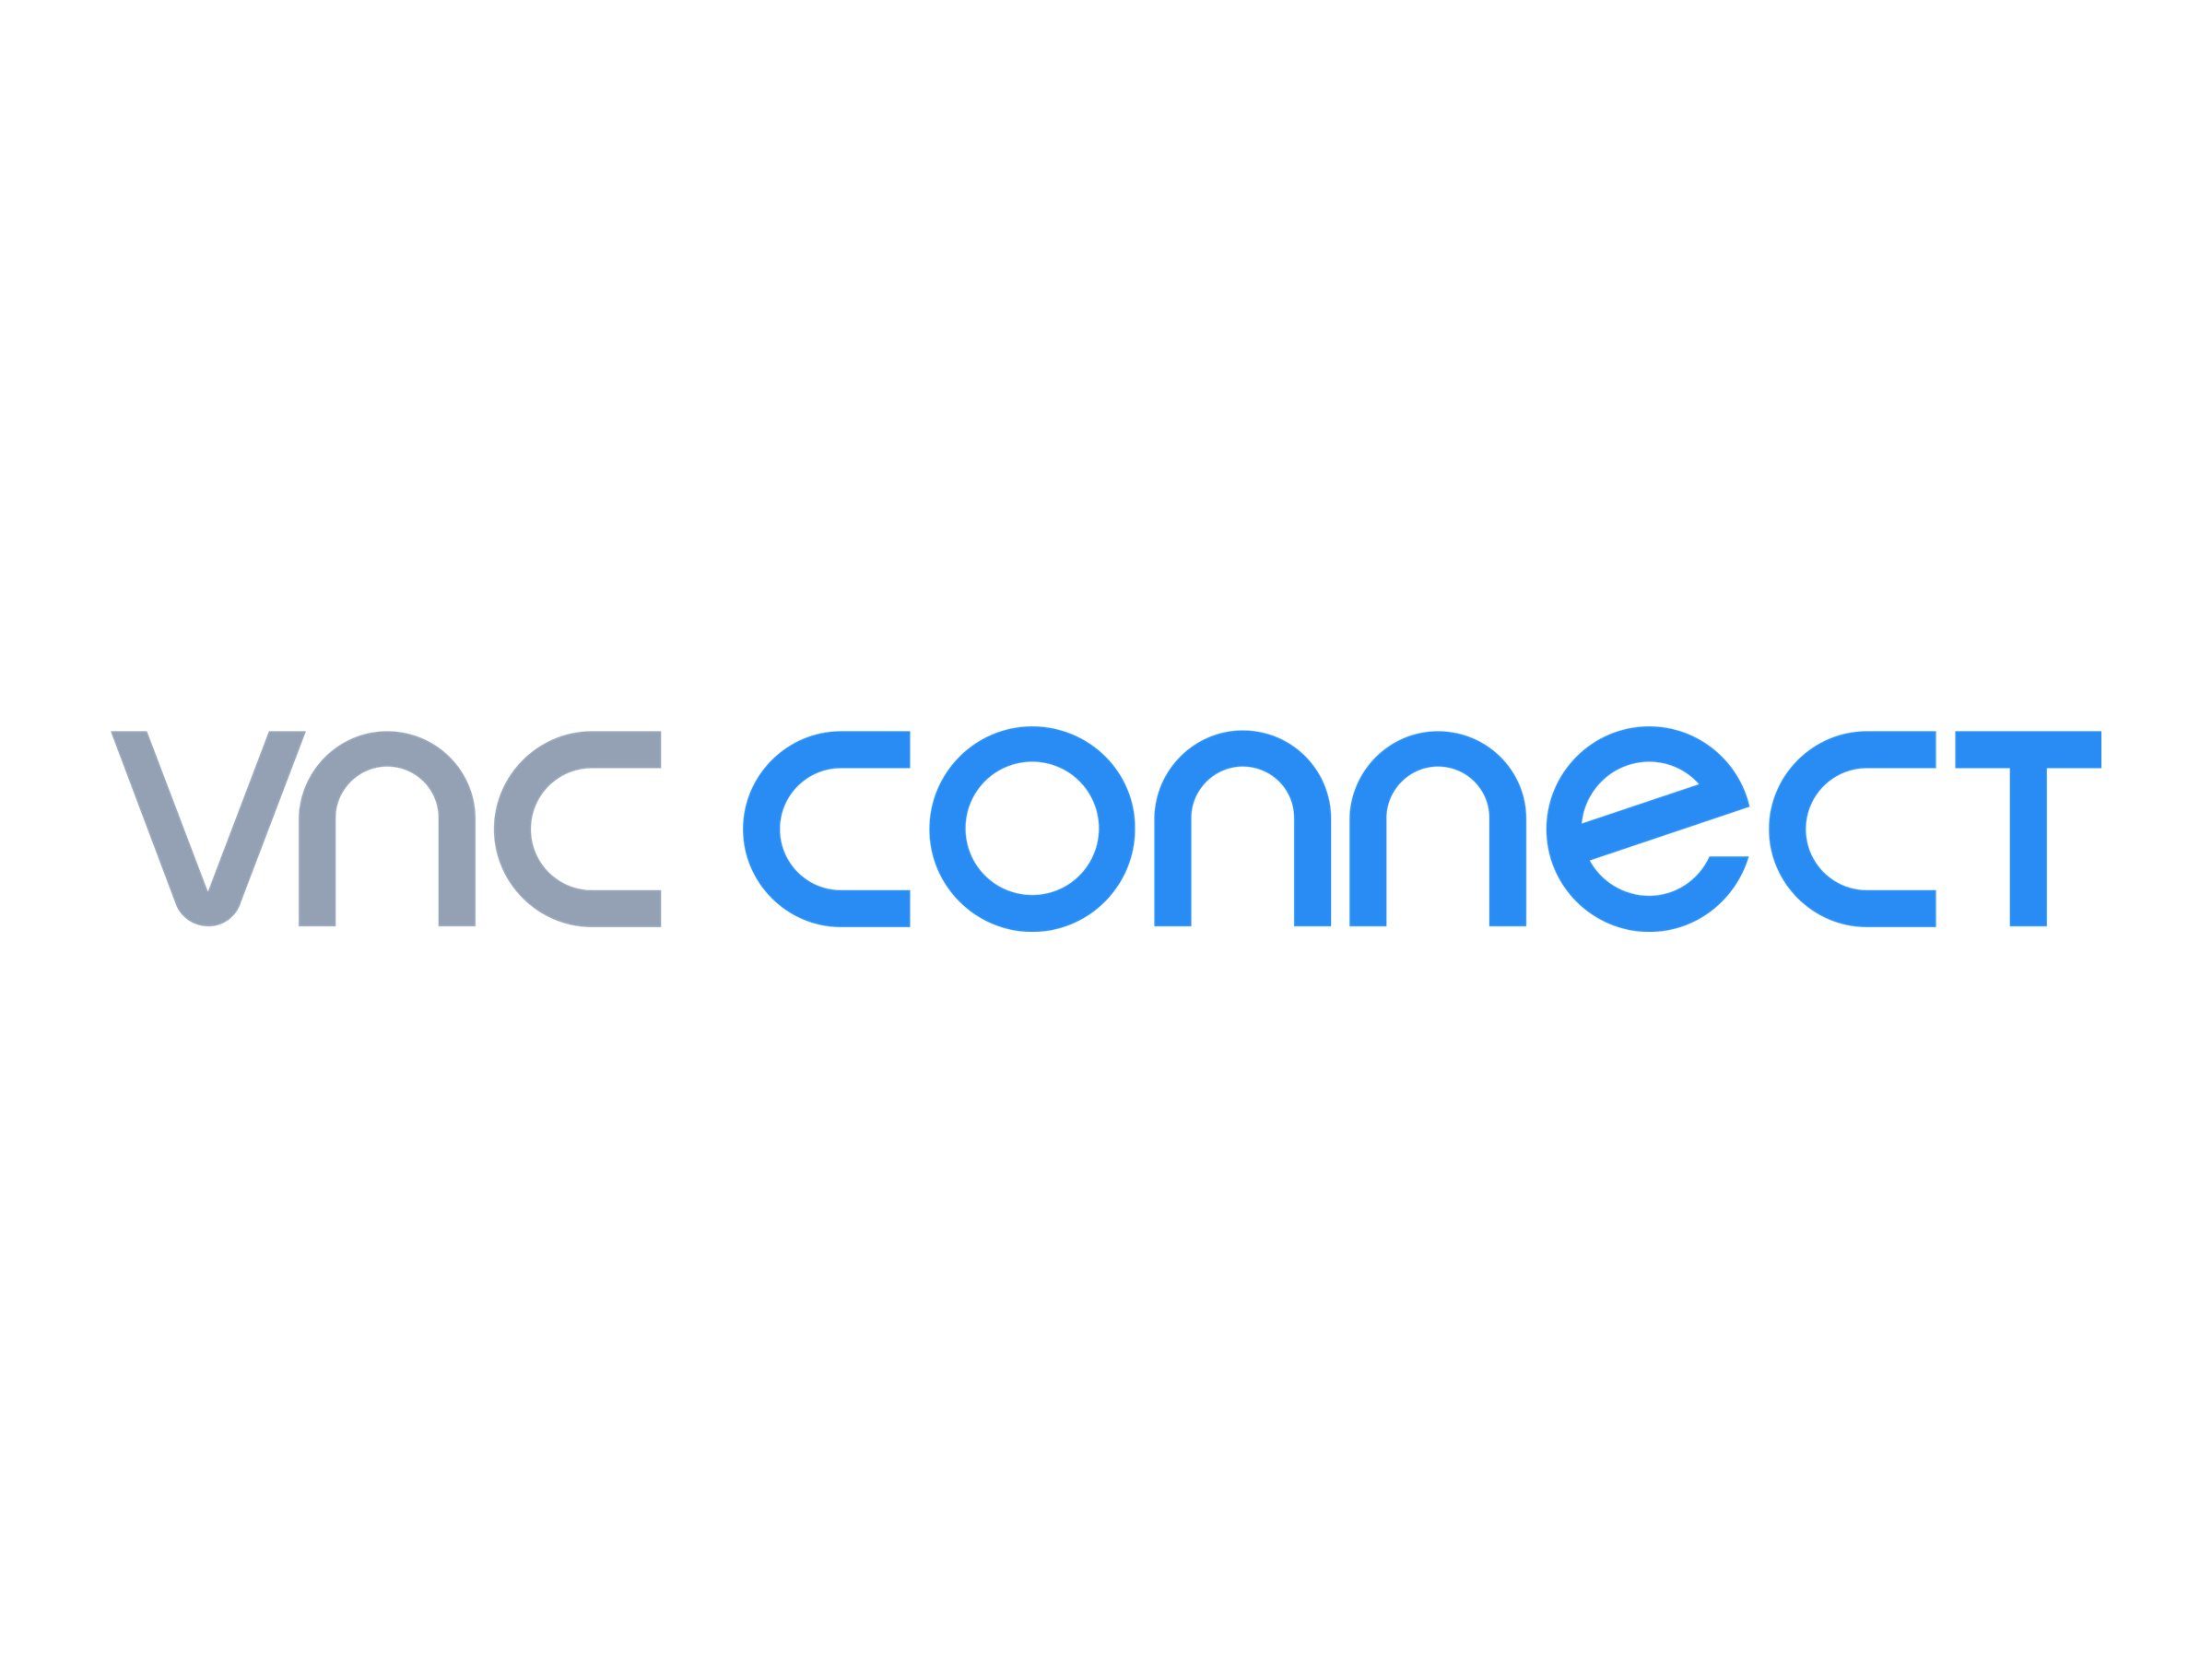 vnc connect enterprise